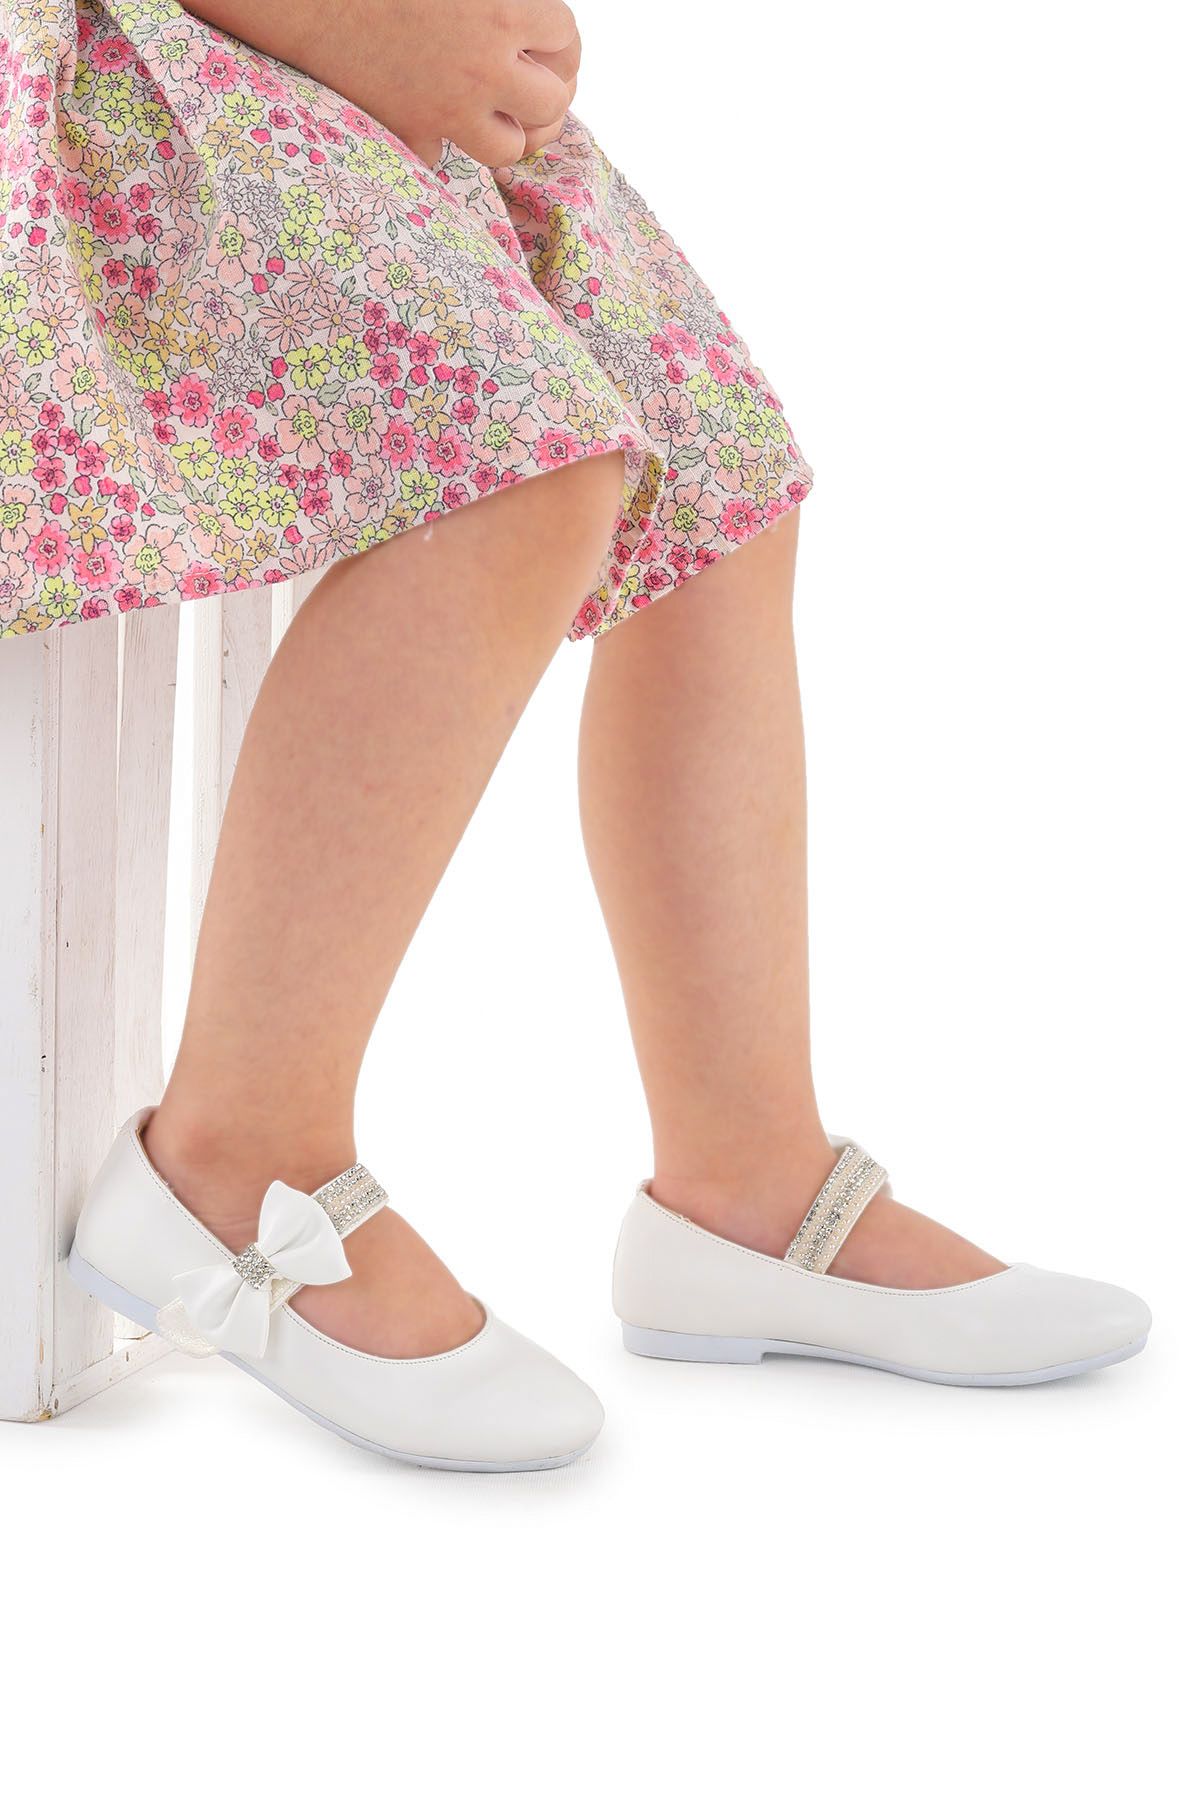 Kiko Kids Cırtlı Kız Çocuk Taşlı Babet Ayakkabı 252 Cilt